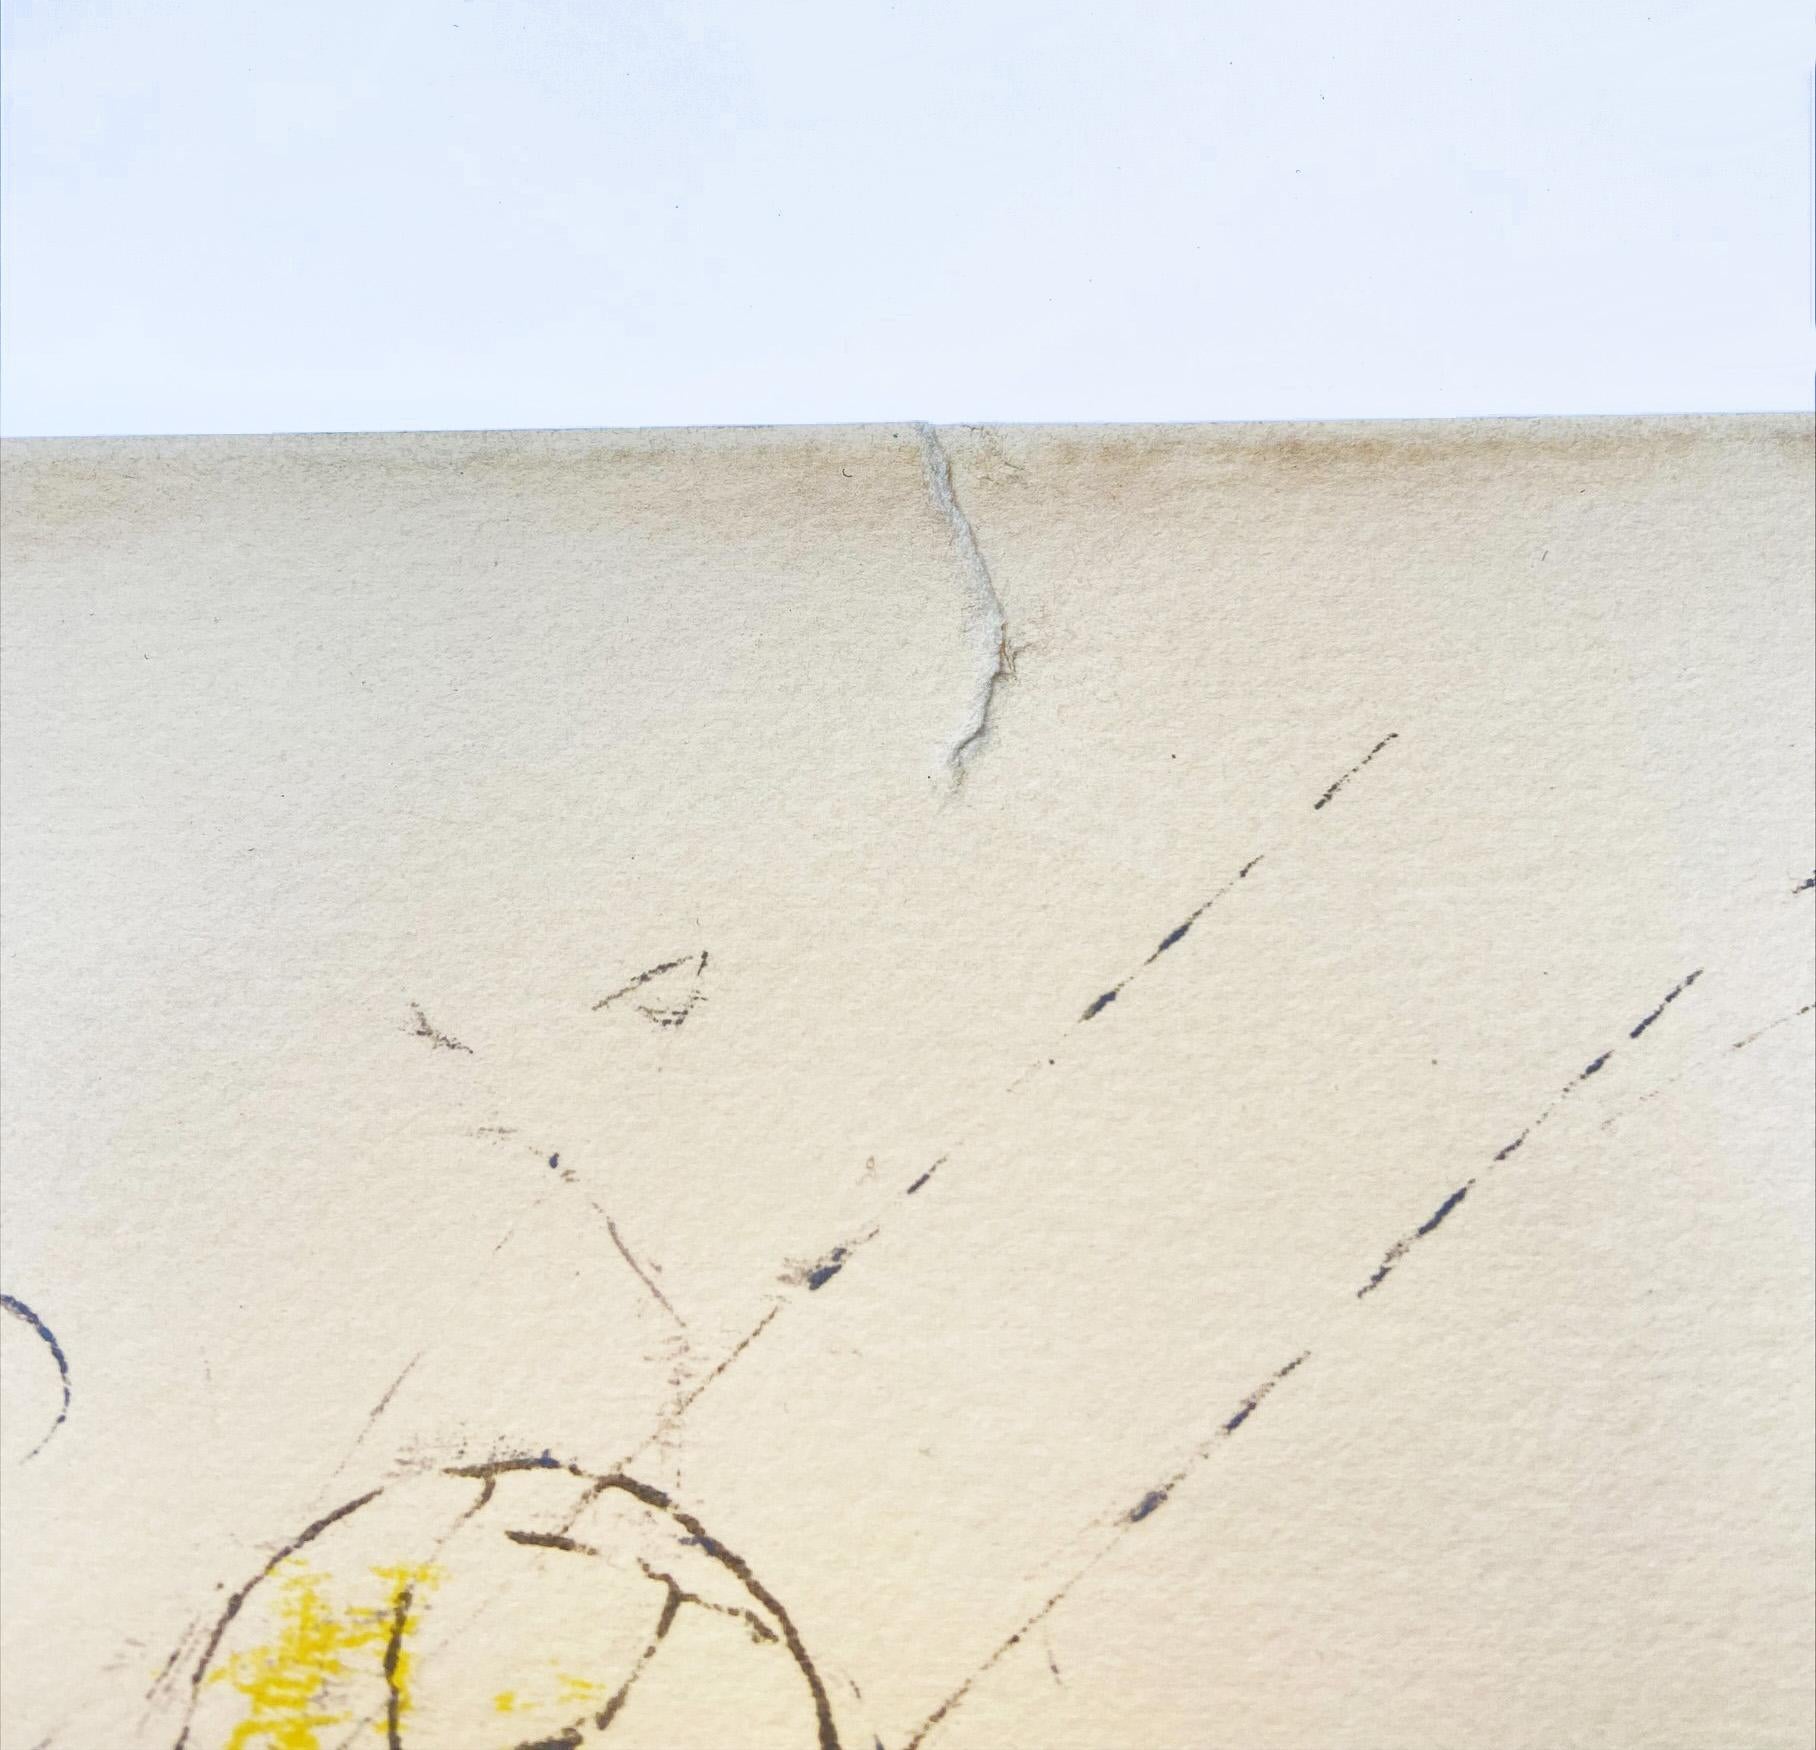 ROBERTO MATTA - Sans titre (Architecture)
Lithographie signée et numérotée sur 125
1969
Déchirure sur le haut de l'œuvre 
75,5x56
490€